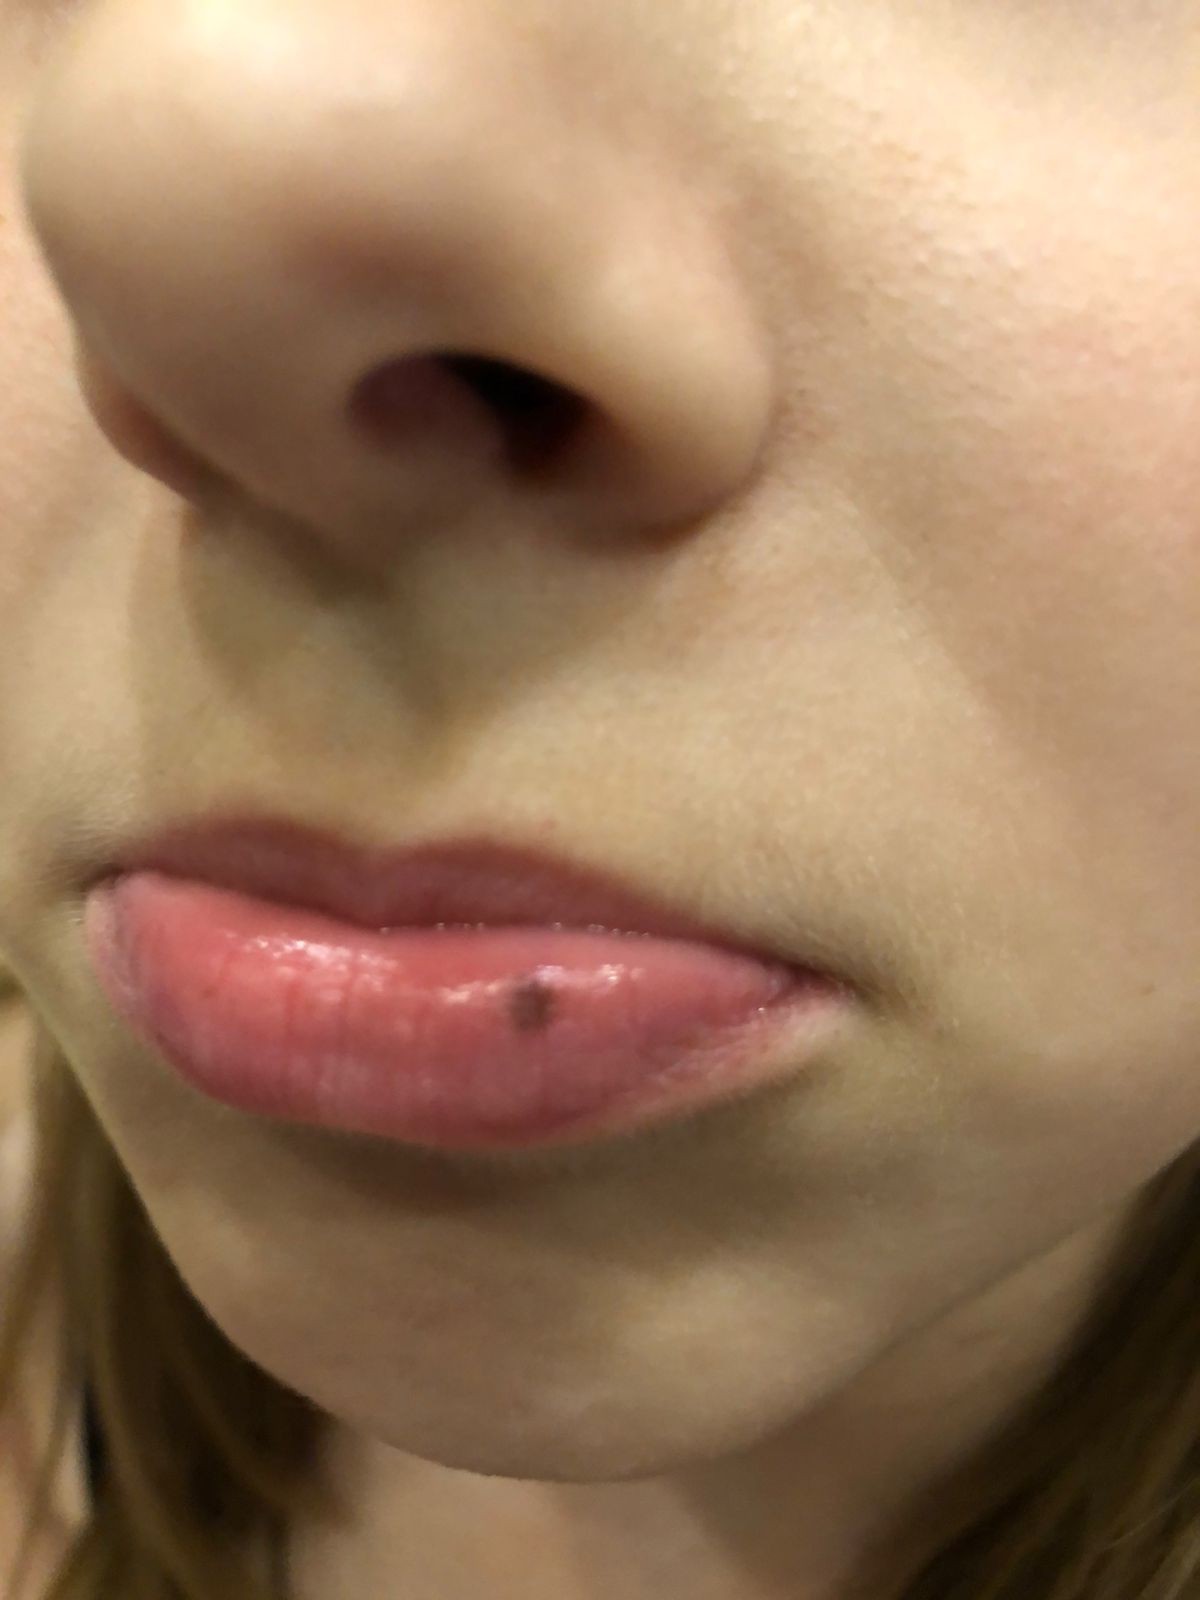 Пигментация вокруг губ